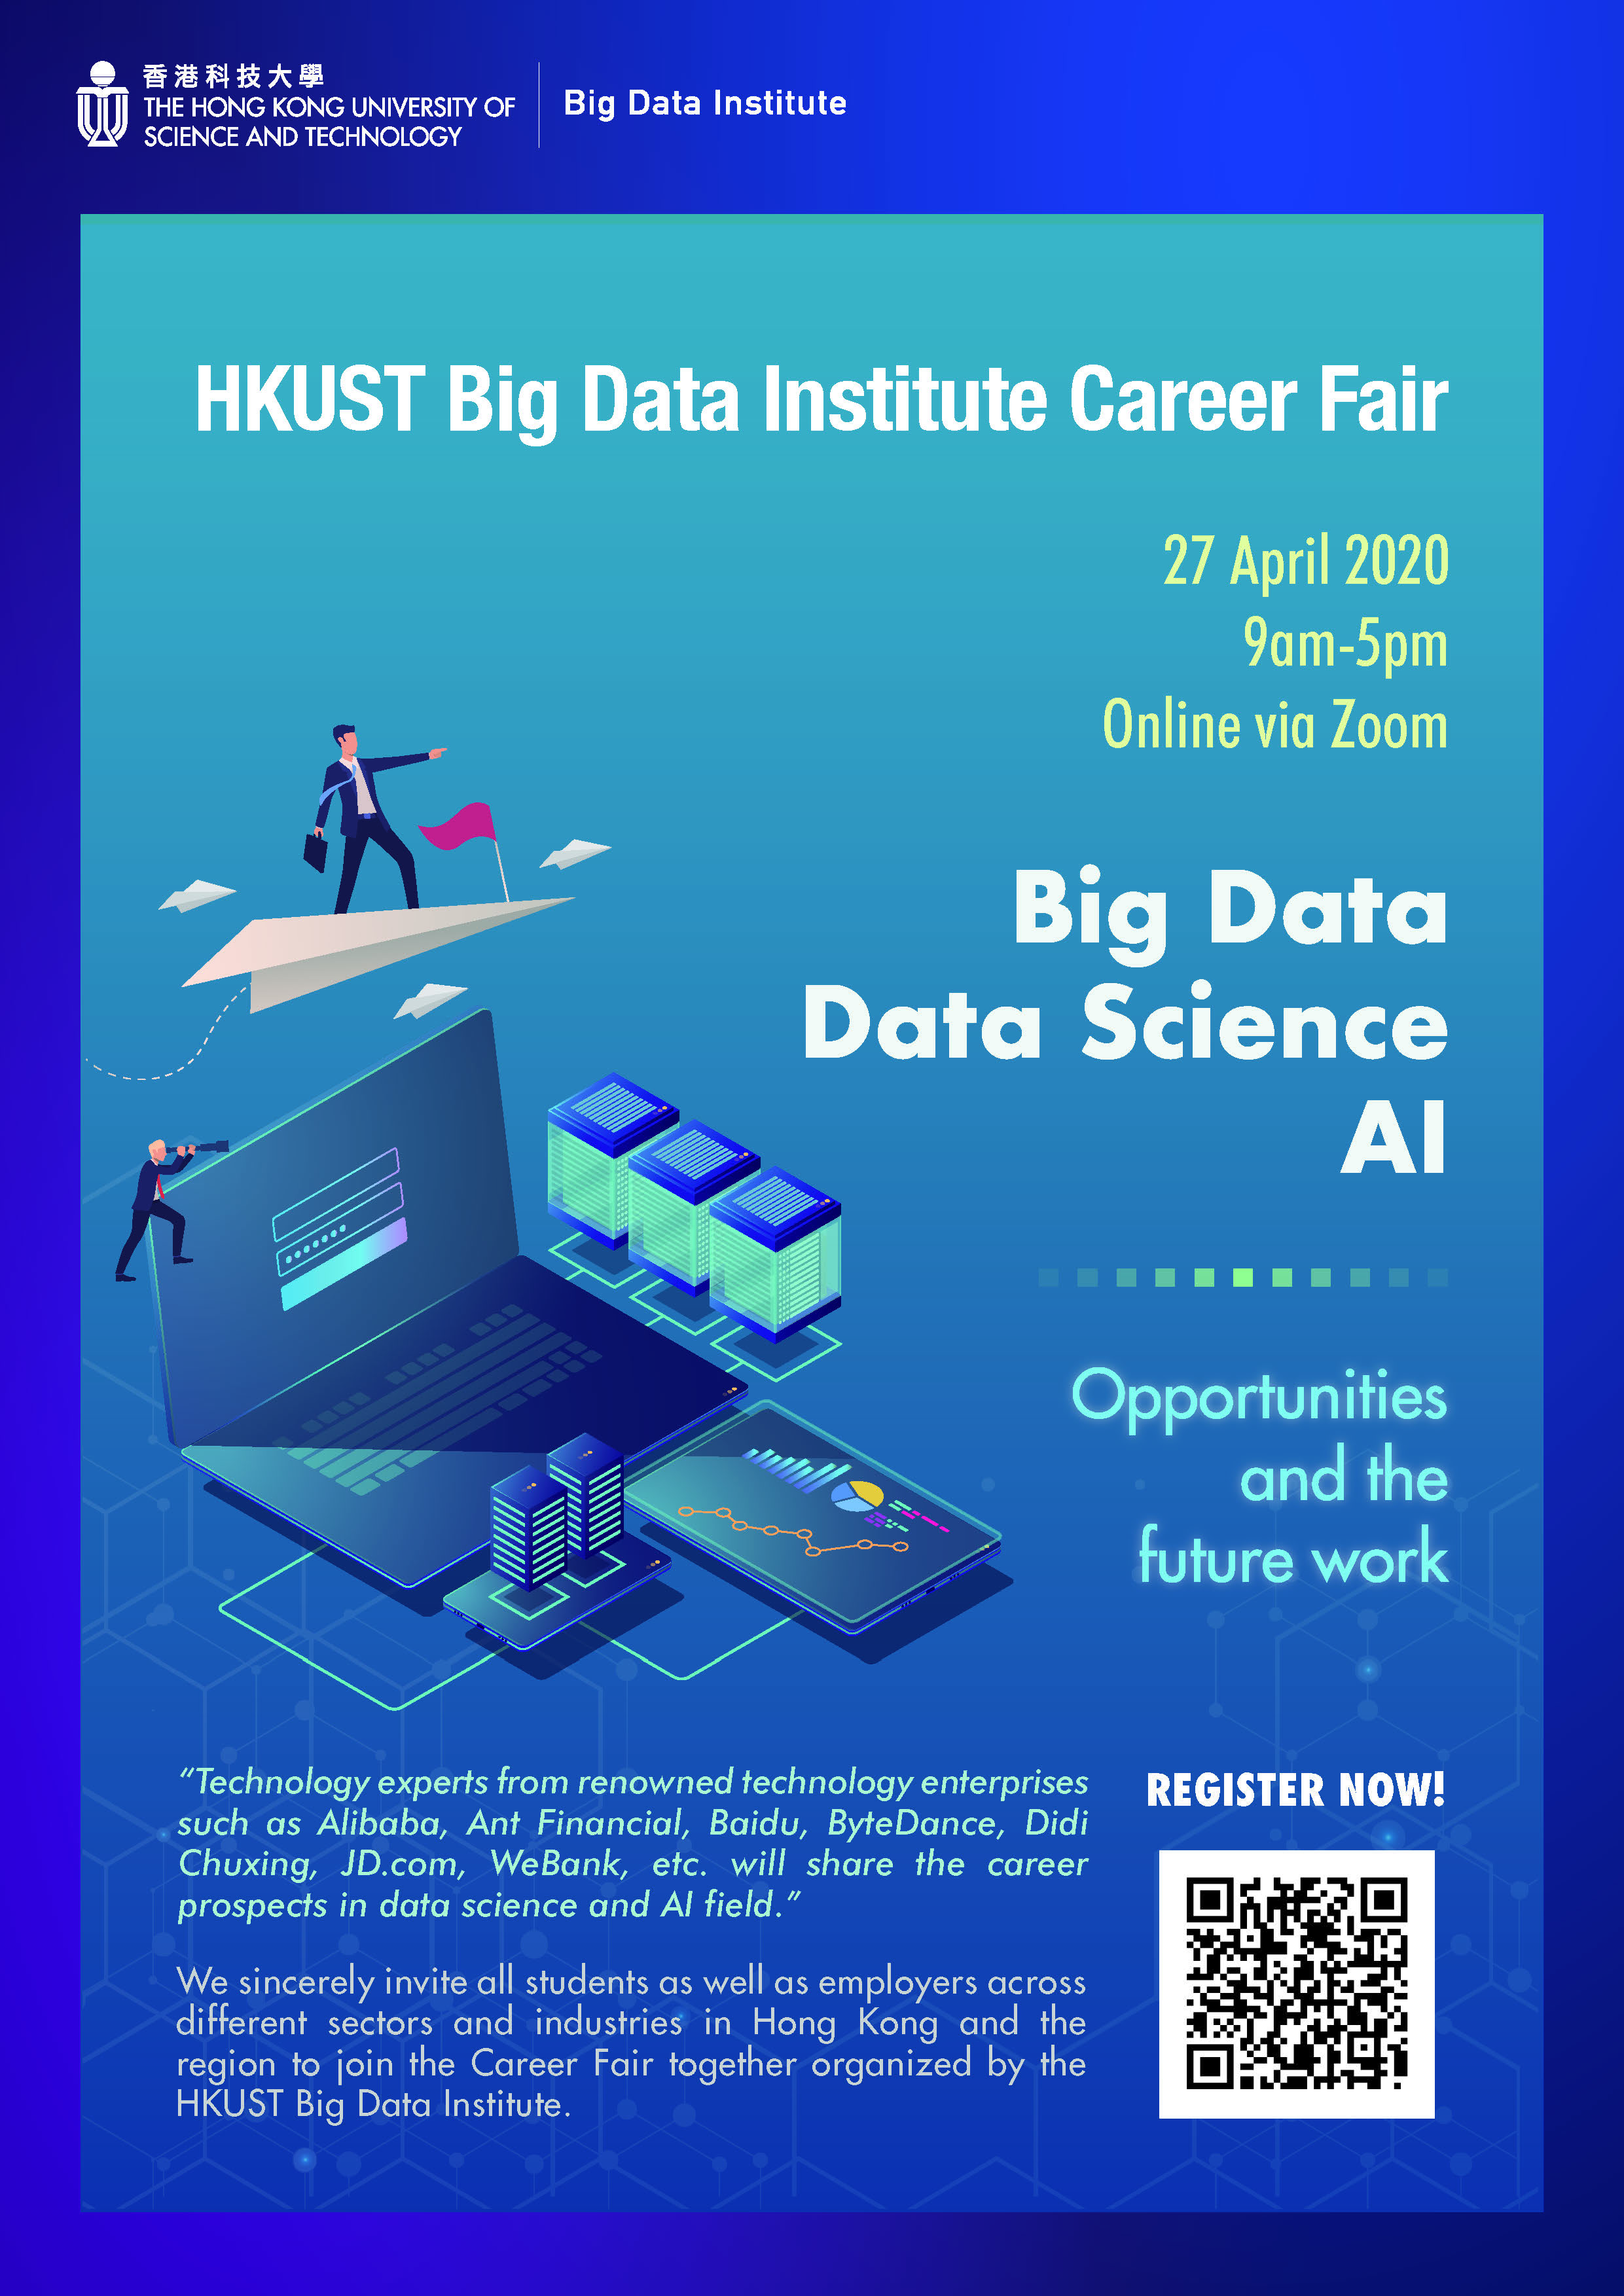 HKUST Big Data Institute Career Fair on 27 April 2020